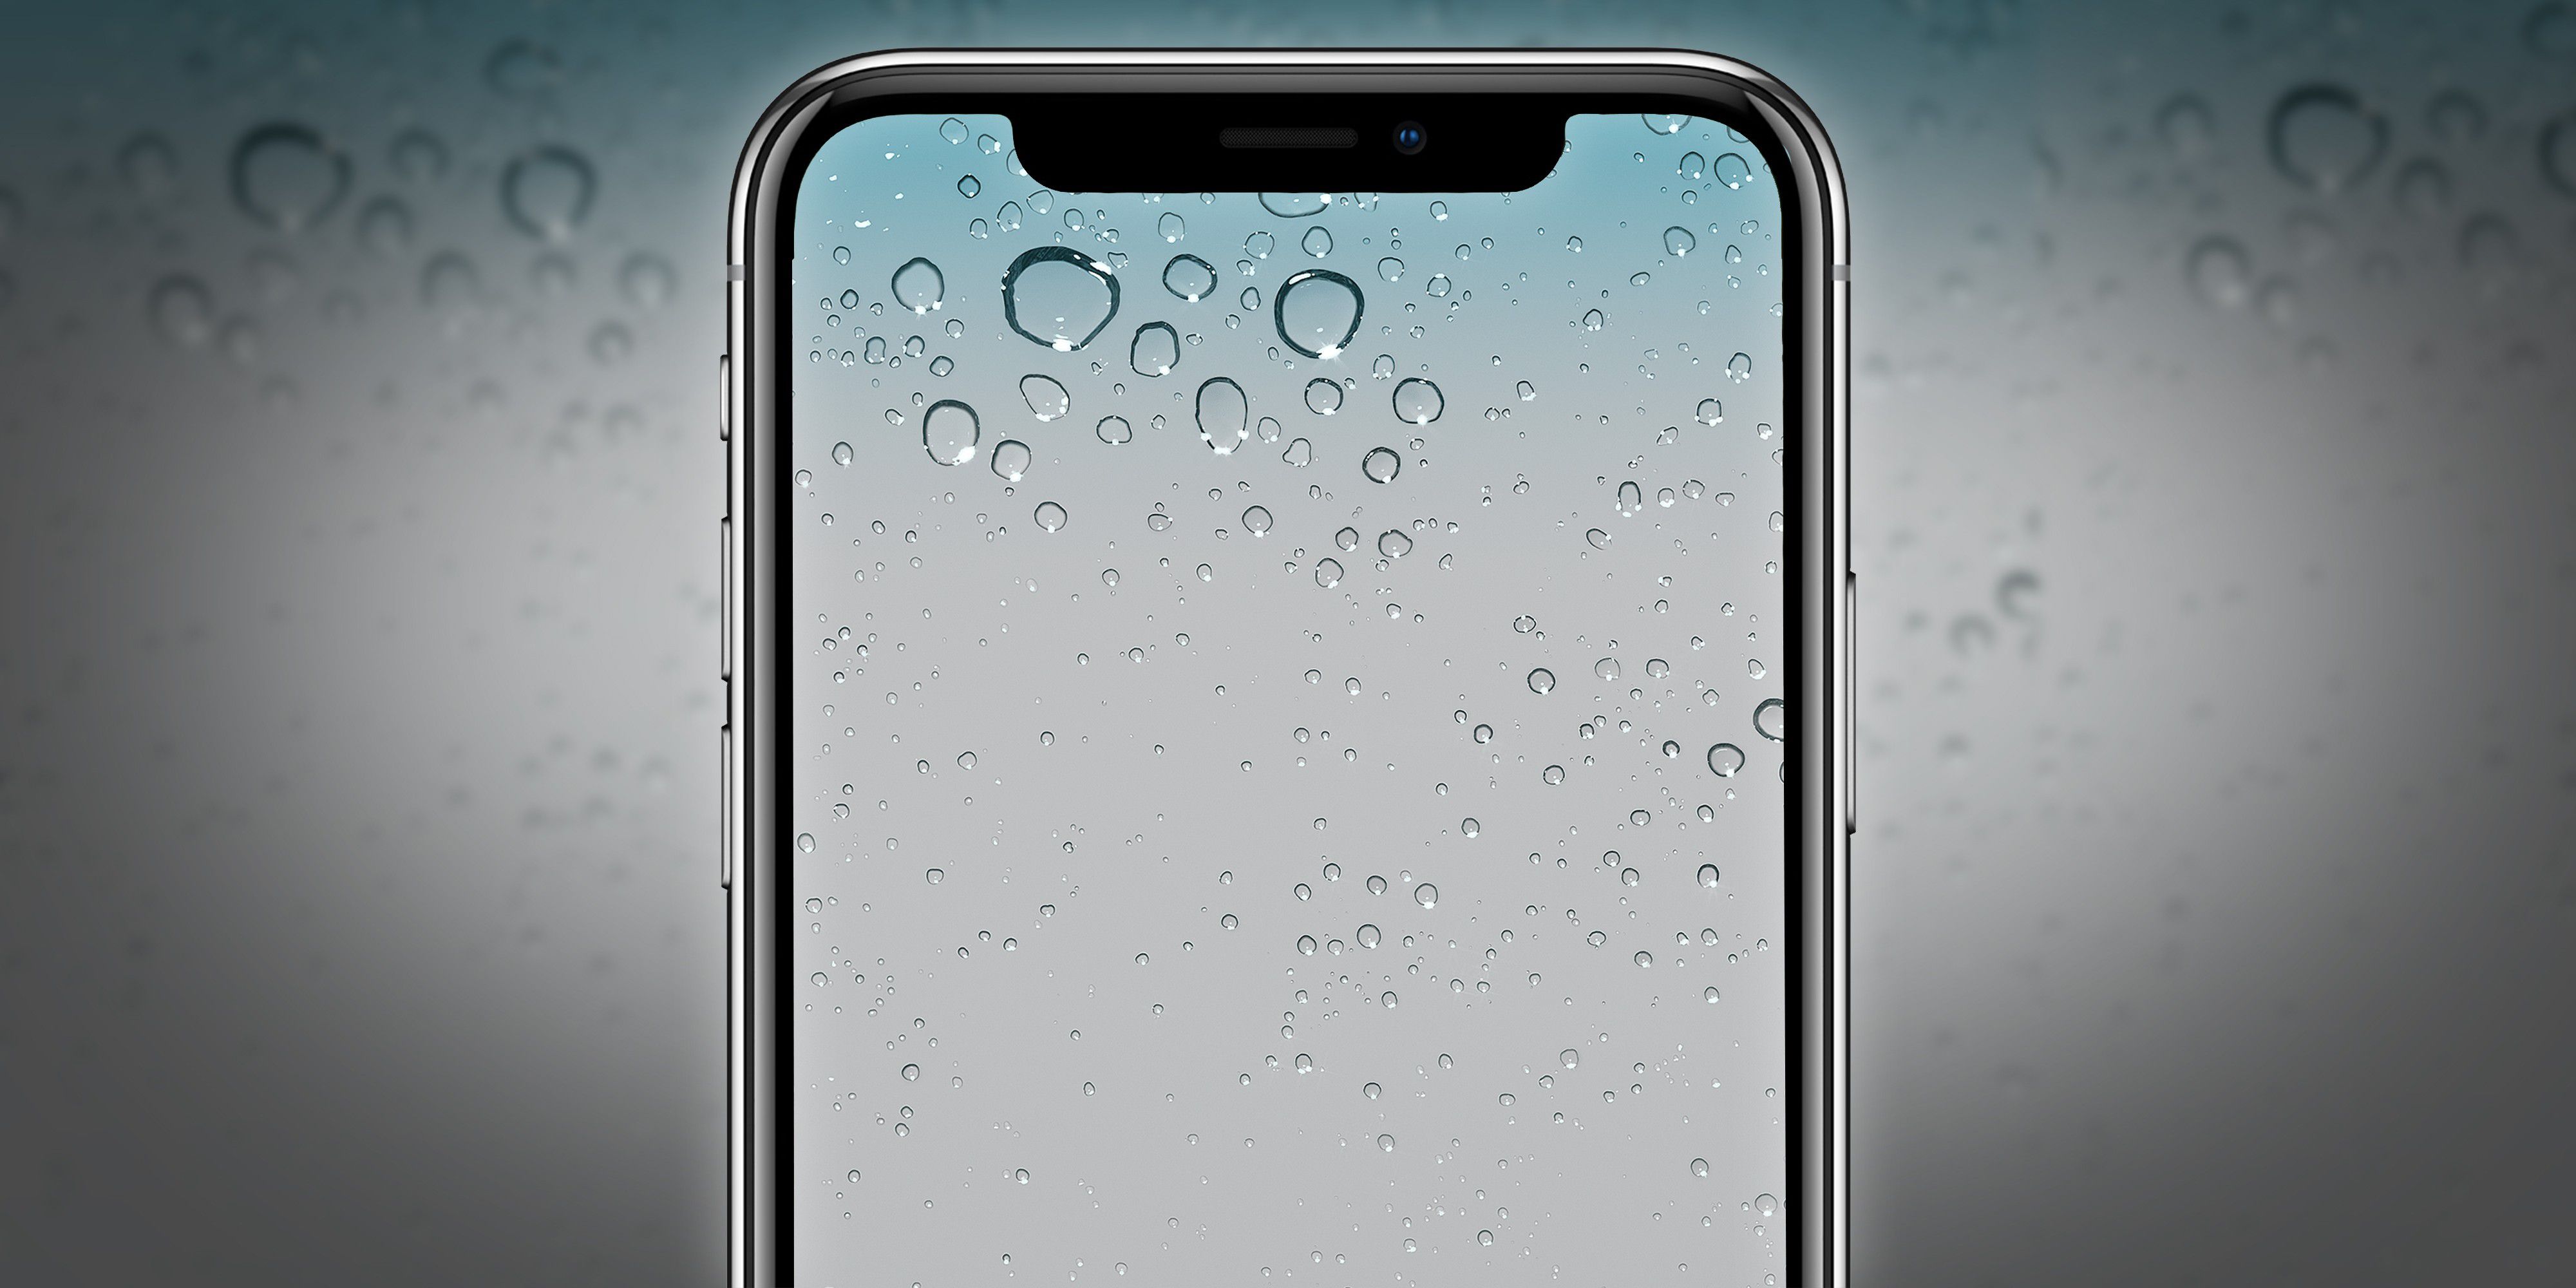 Alte iOS-Hintergrundbilder für iPhone X optimiert - Macwelt